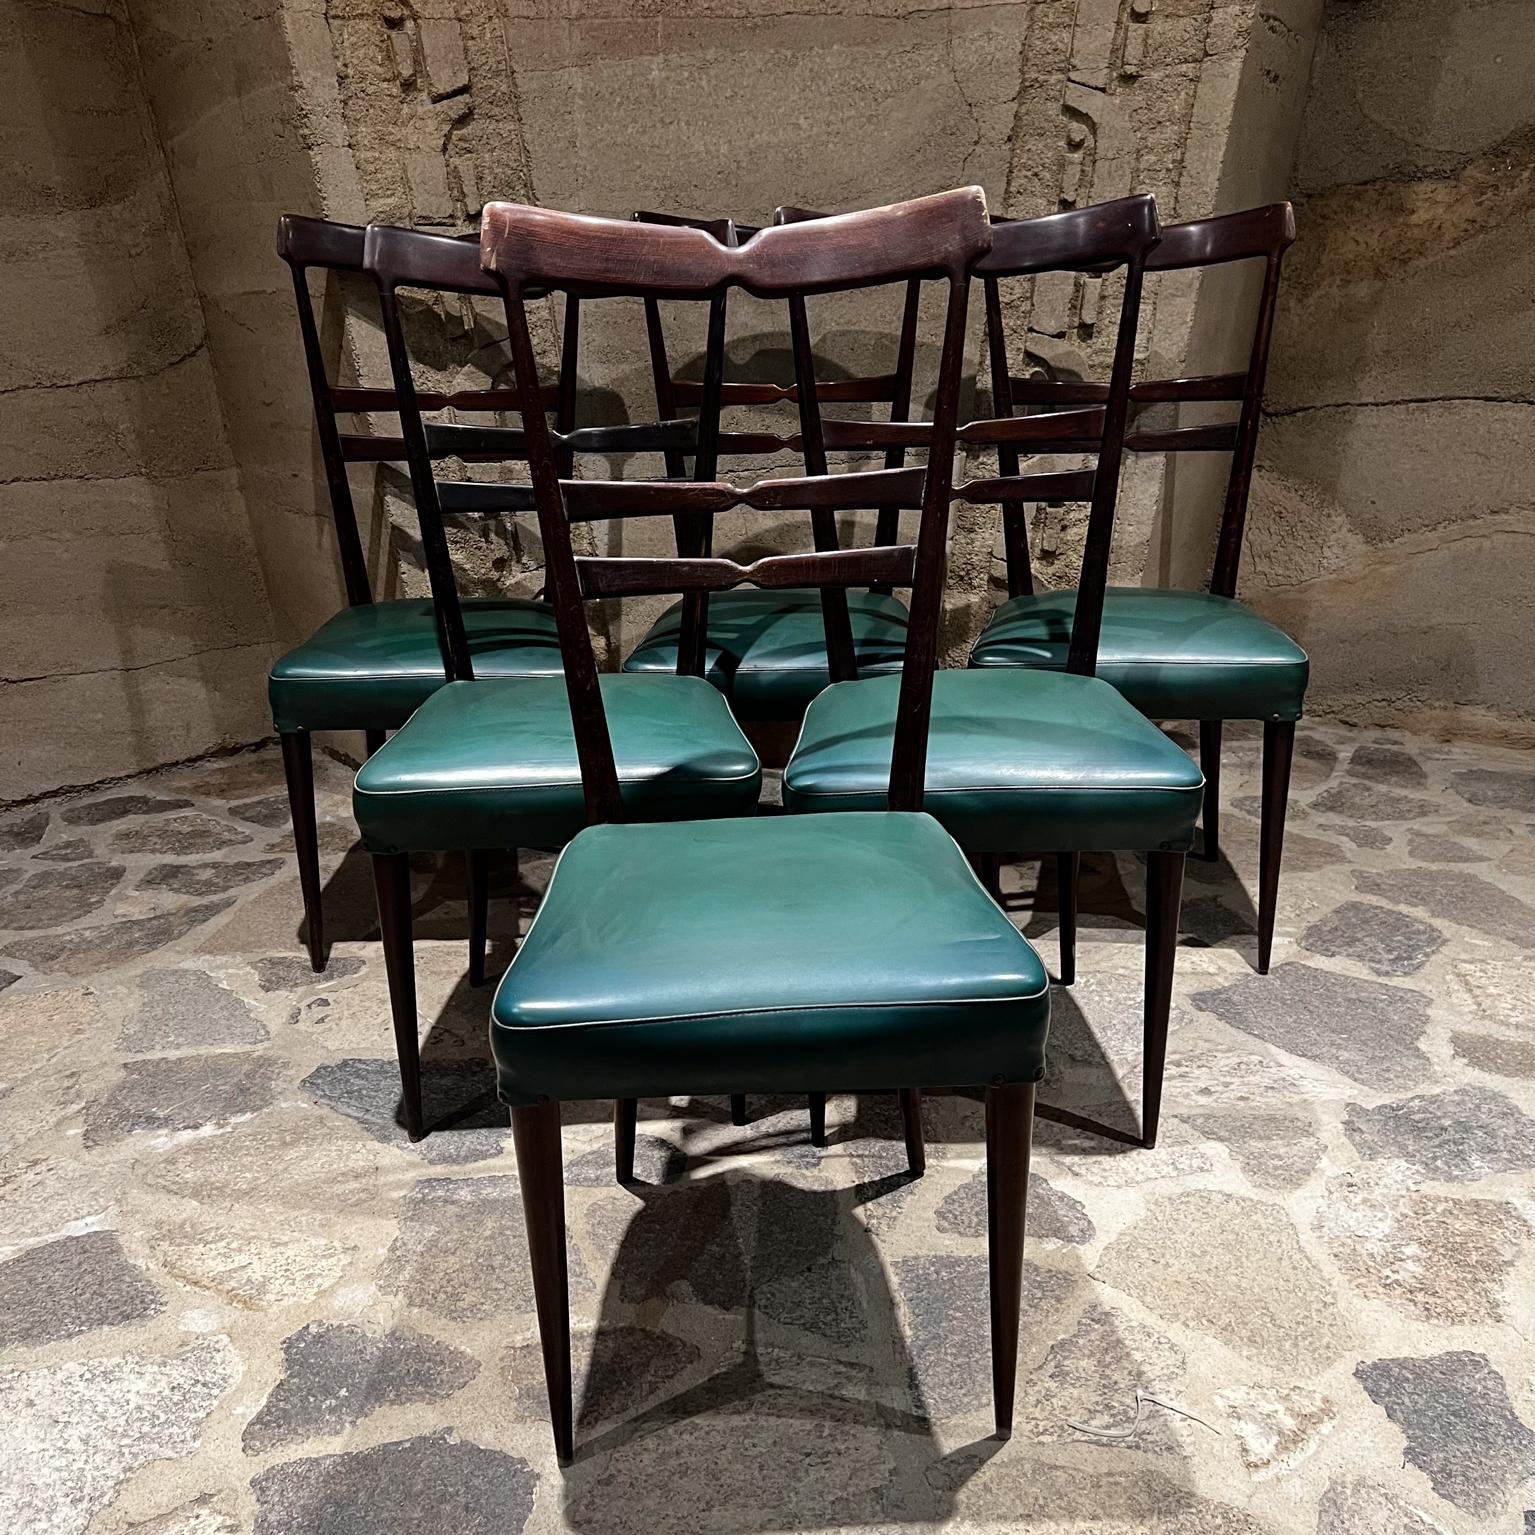 Ensemble de 6 chaises de salle à manger vertes d'après Ico Parisi
Fabriqué en Italie vers les années 1950.
Non marqué
Finition en bois foncé acajou.
Naugahyde vert original.
Ferme et robuste.
41,25 h x 20,5 p x 17,75 w Siège 18,5 h
État original